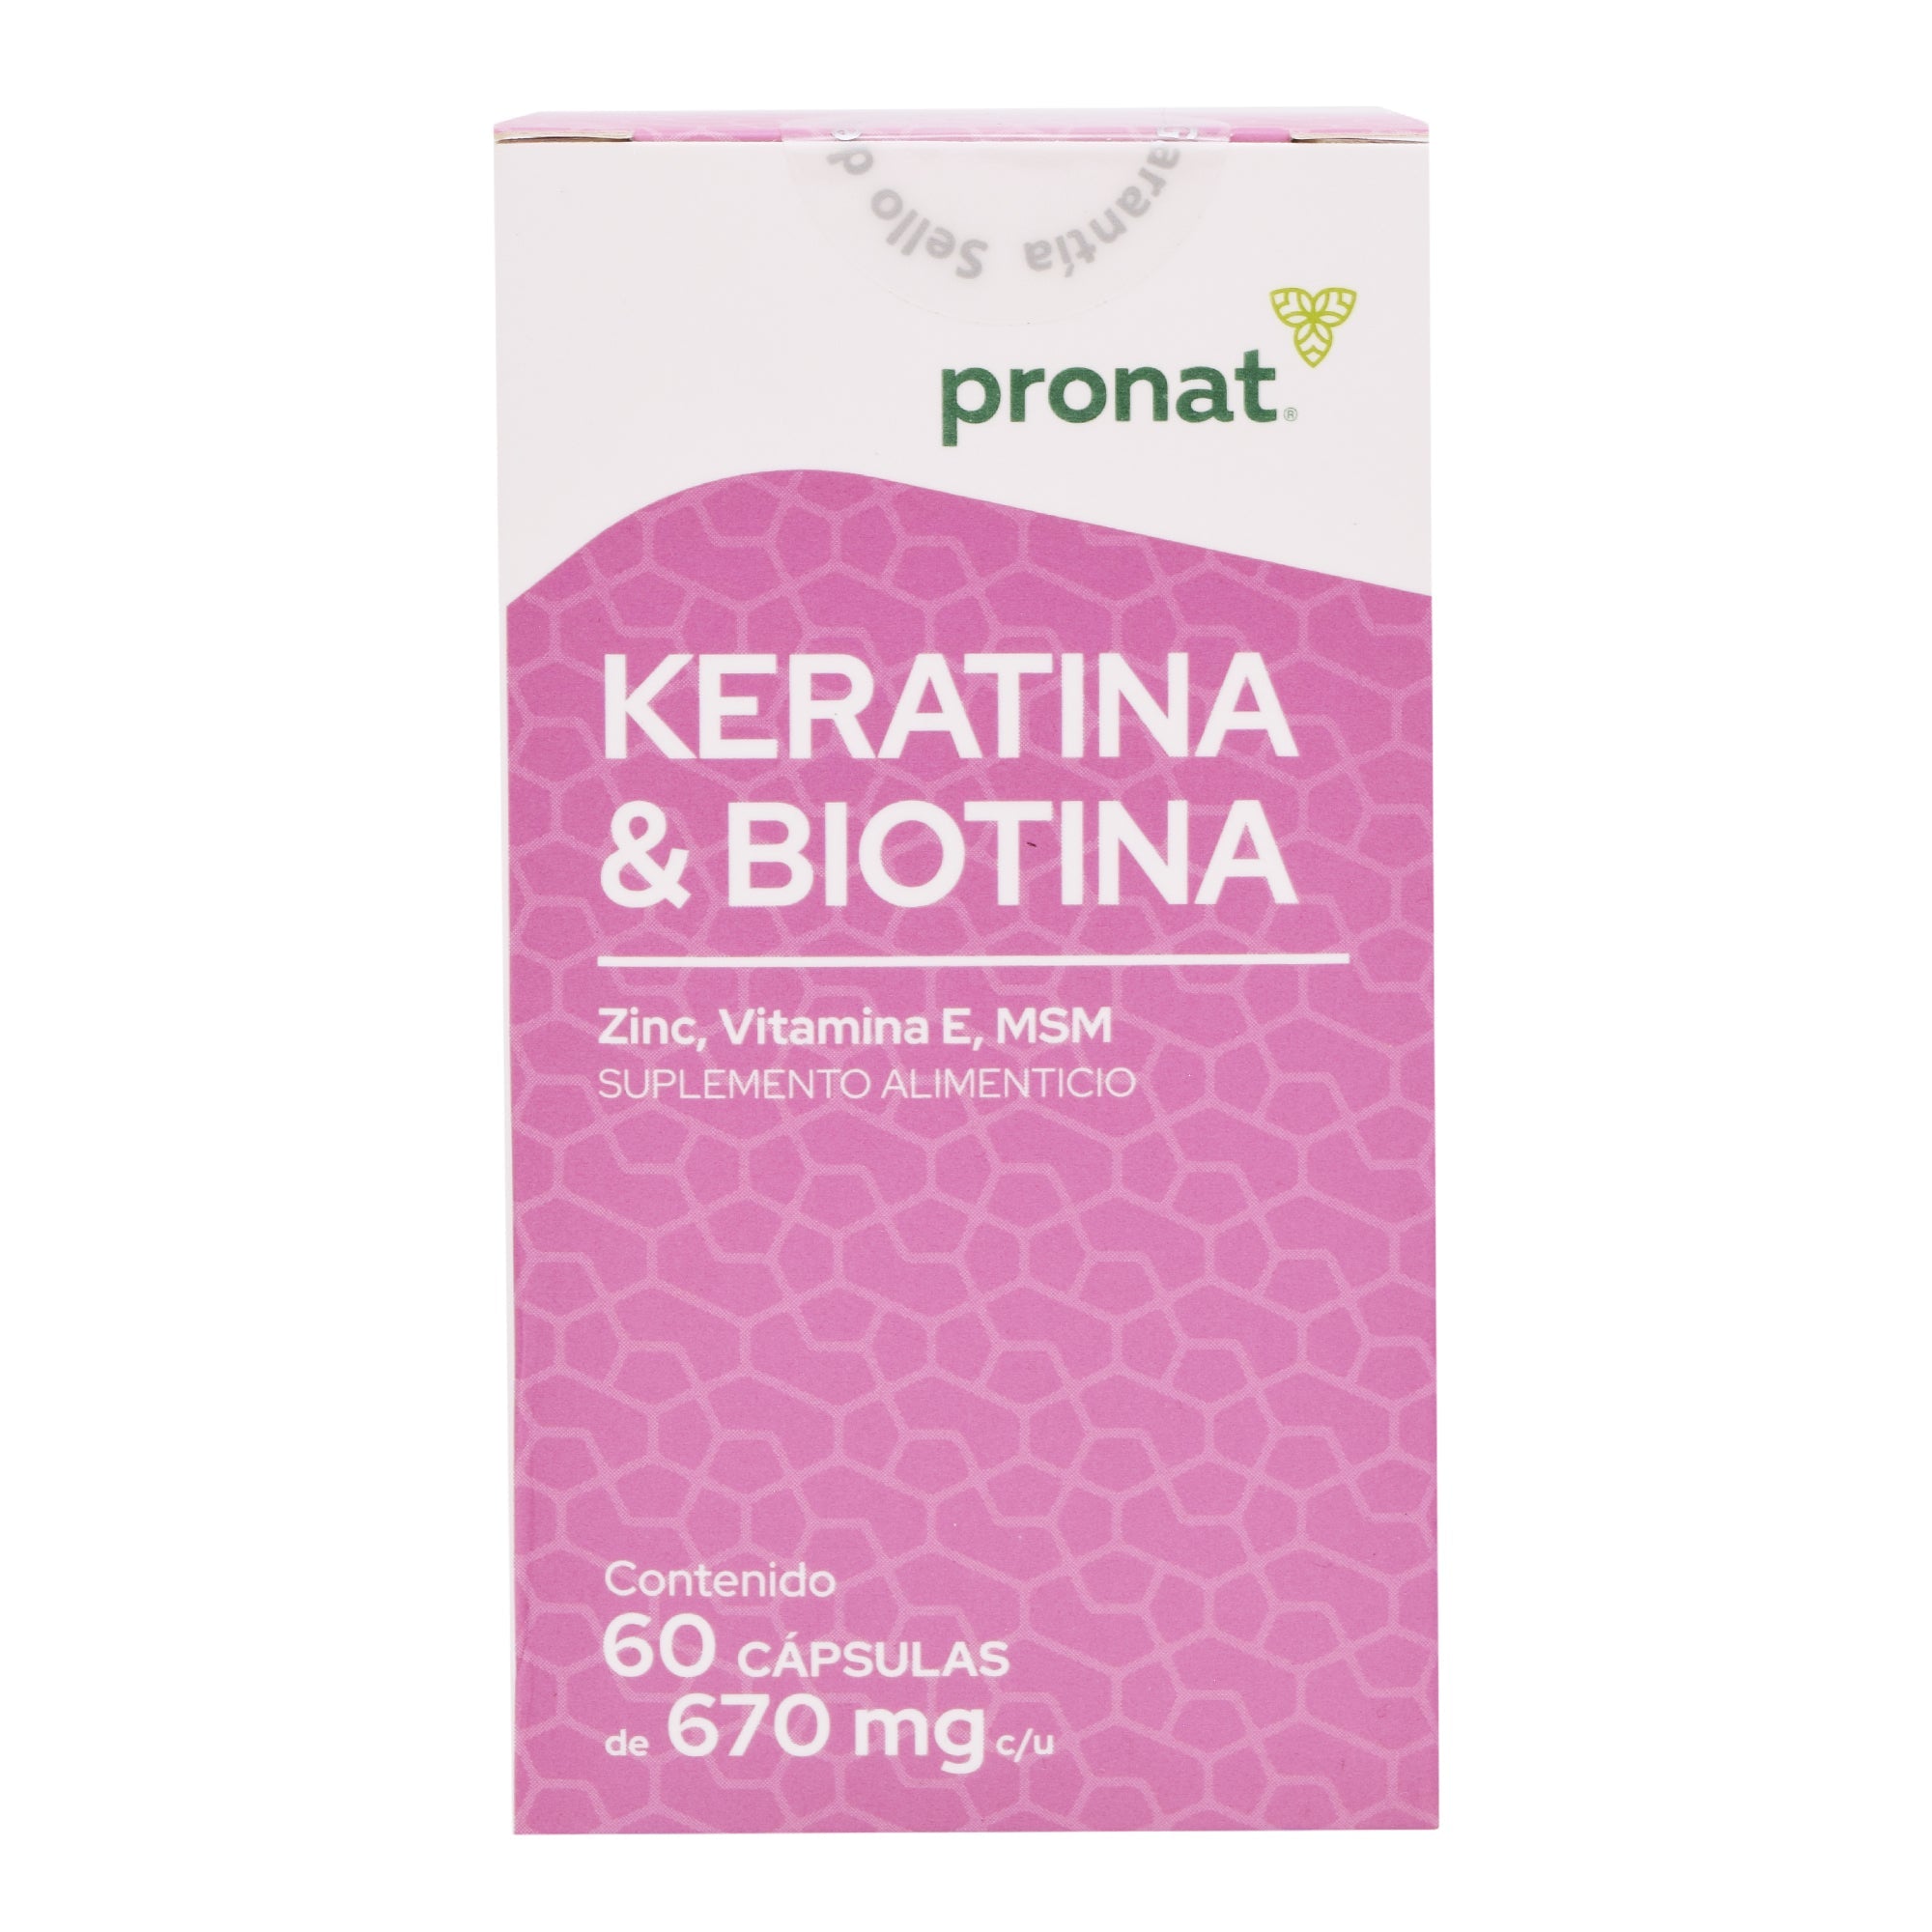 Keratina biotina 60 cap